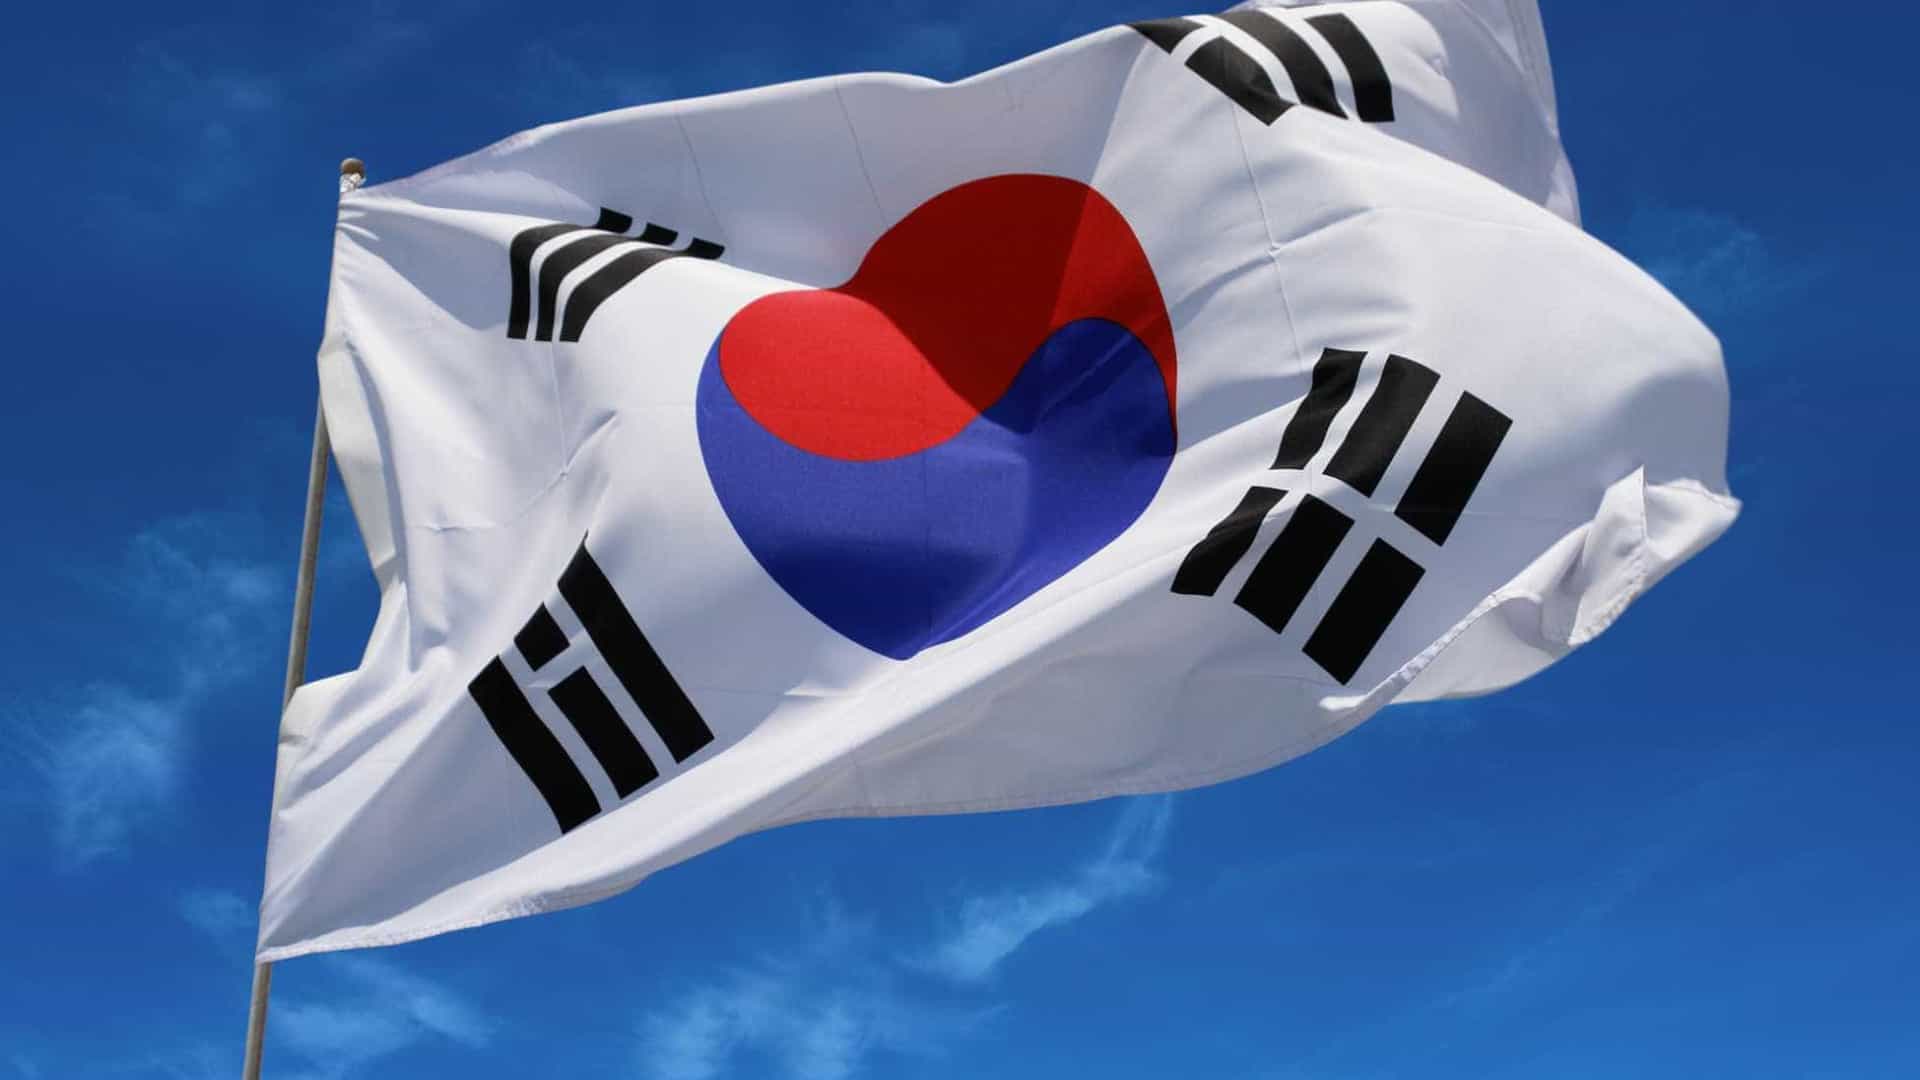 Partido no poder em Seul admite anular acordo de 2018 com Coreia do Norte